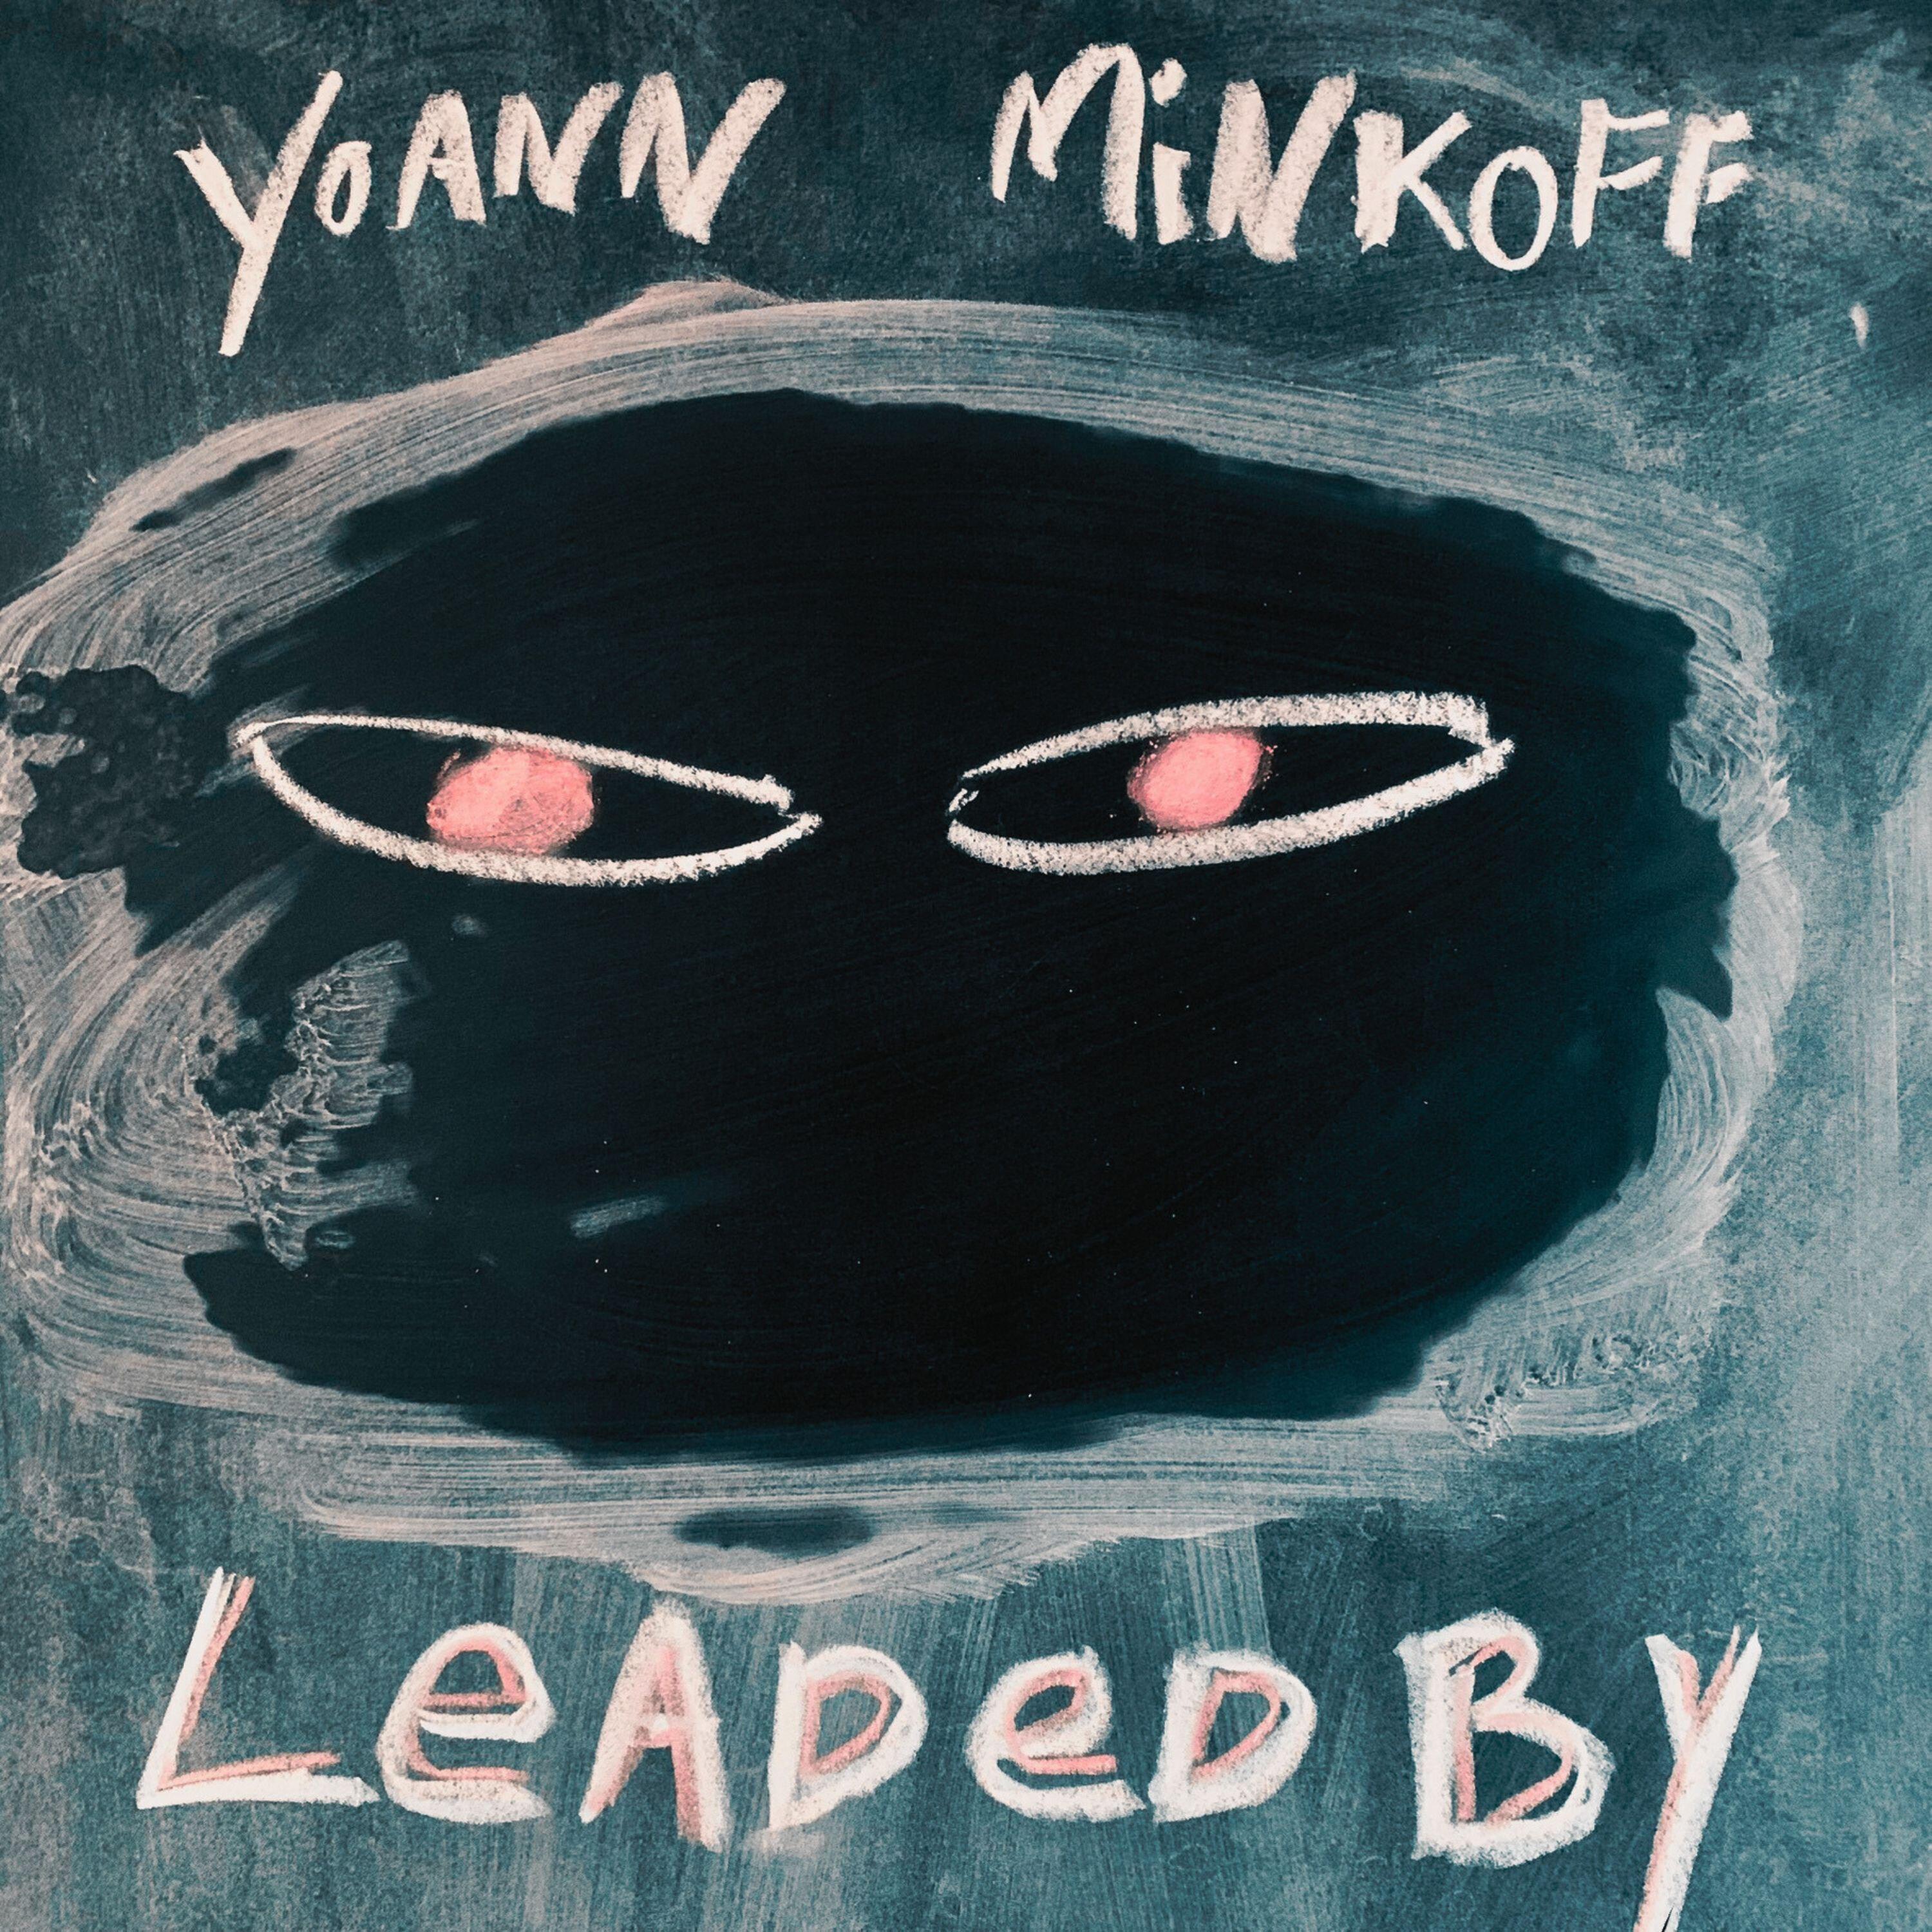 Yoann Minkoff - Leaded By